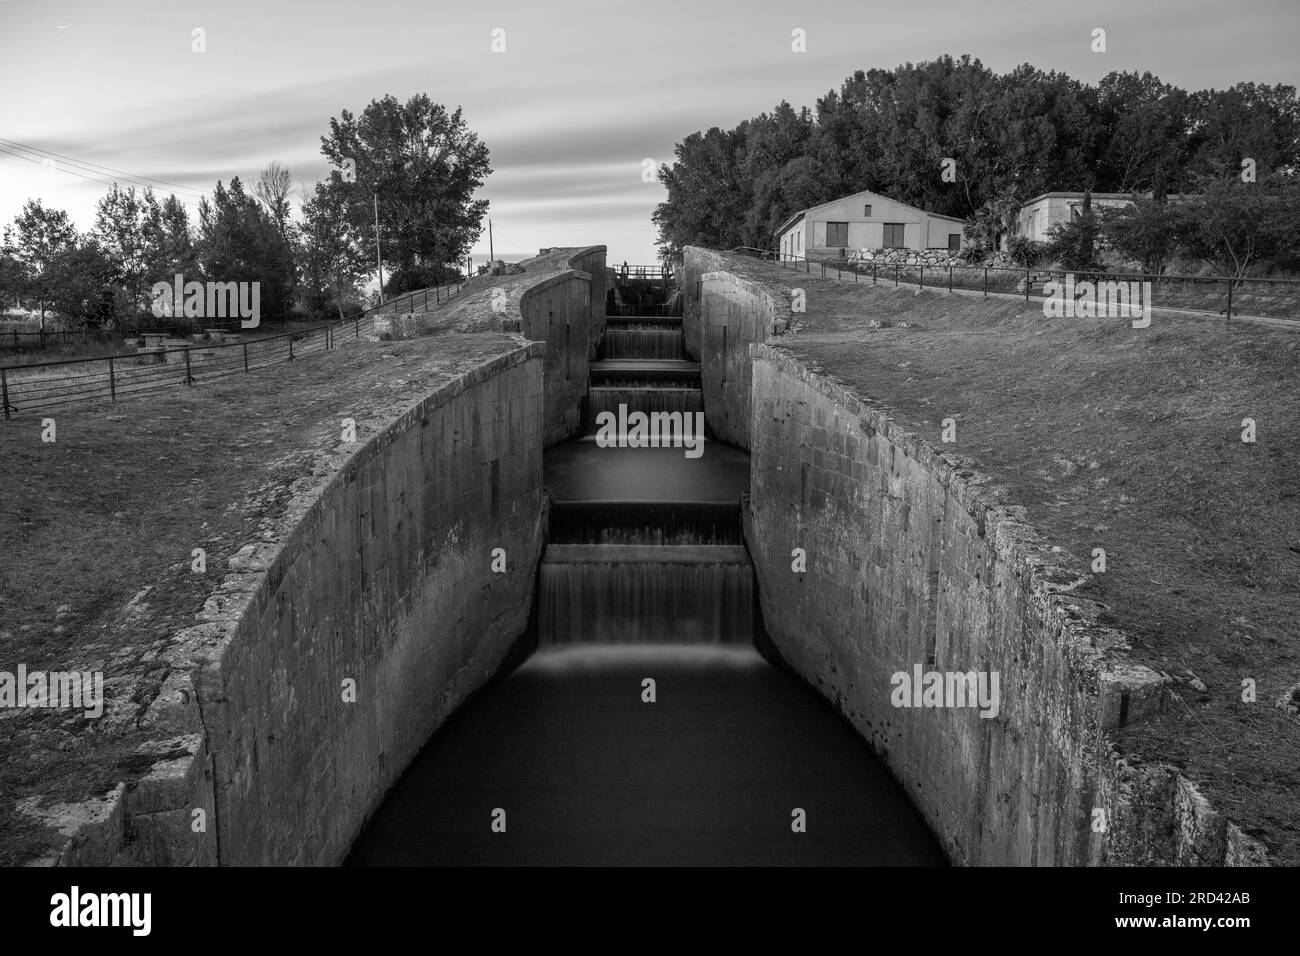 Europe, Espagne, Castille-et-León, Fromista, Esclusa Cuádruple (Quadruple Lock) déclassée sur le Canal de Castille (Canal de Castilla) la nuit Banque D'Images